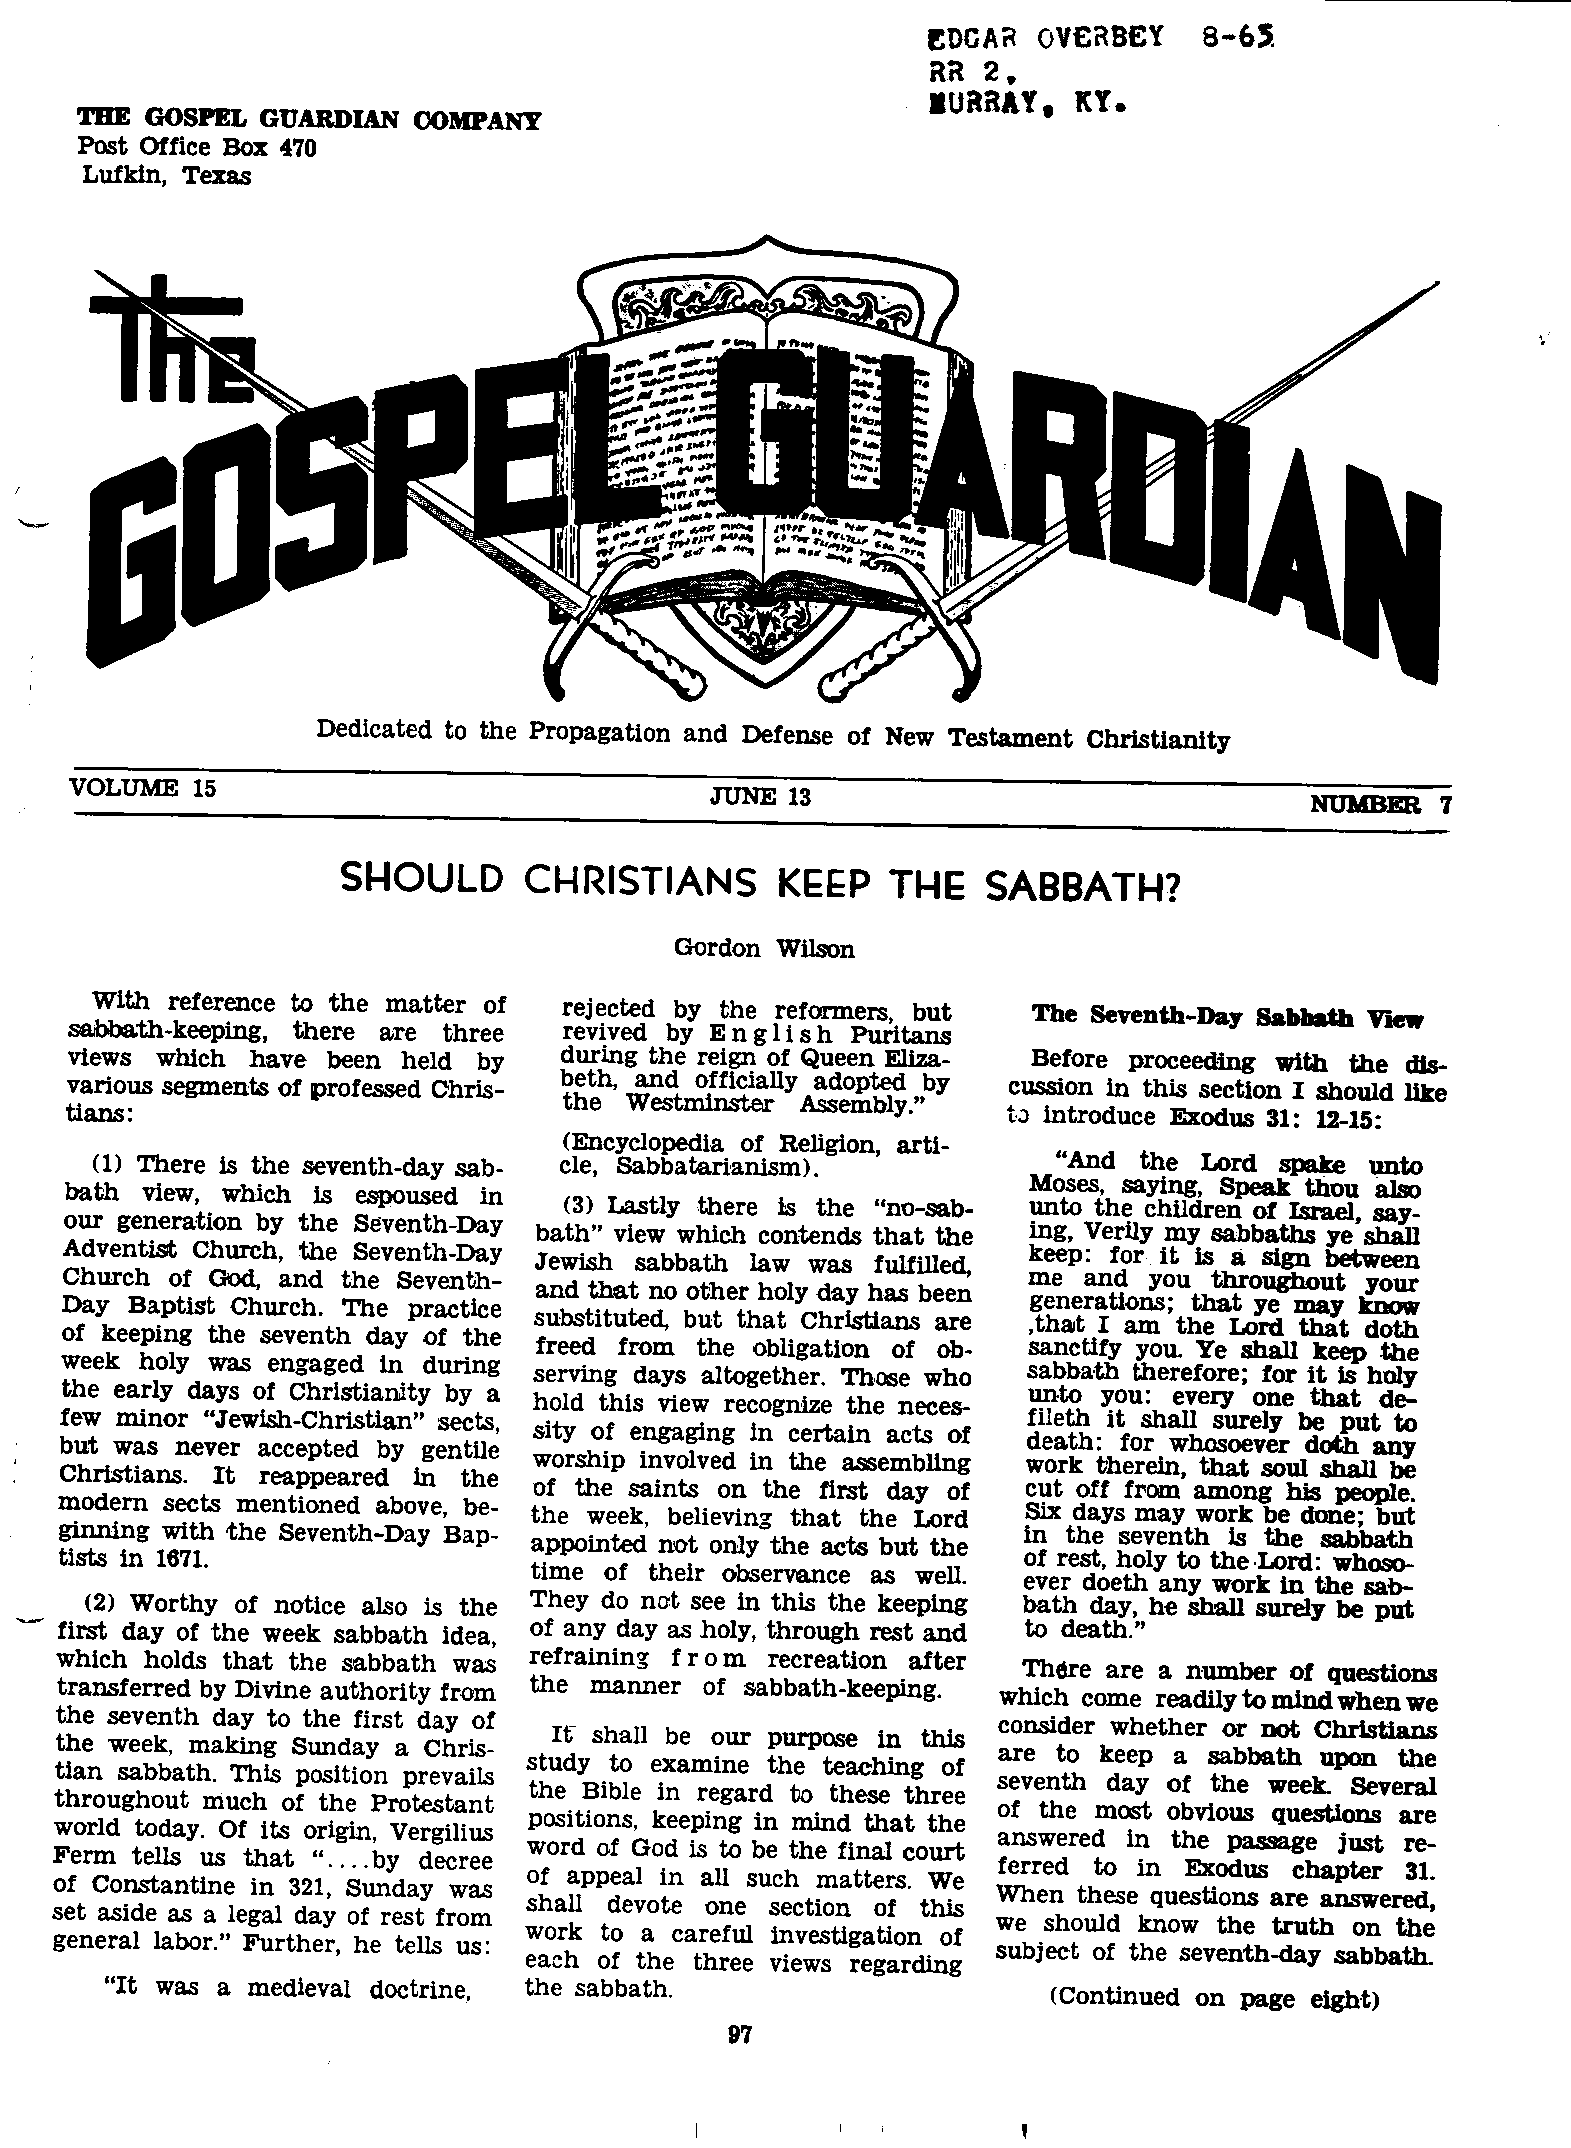 Gospel Guardian Original: Vol.15 No.7 Pg.1